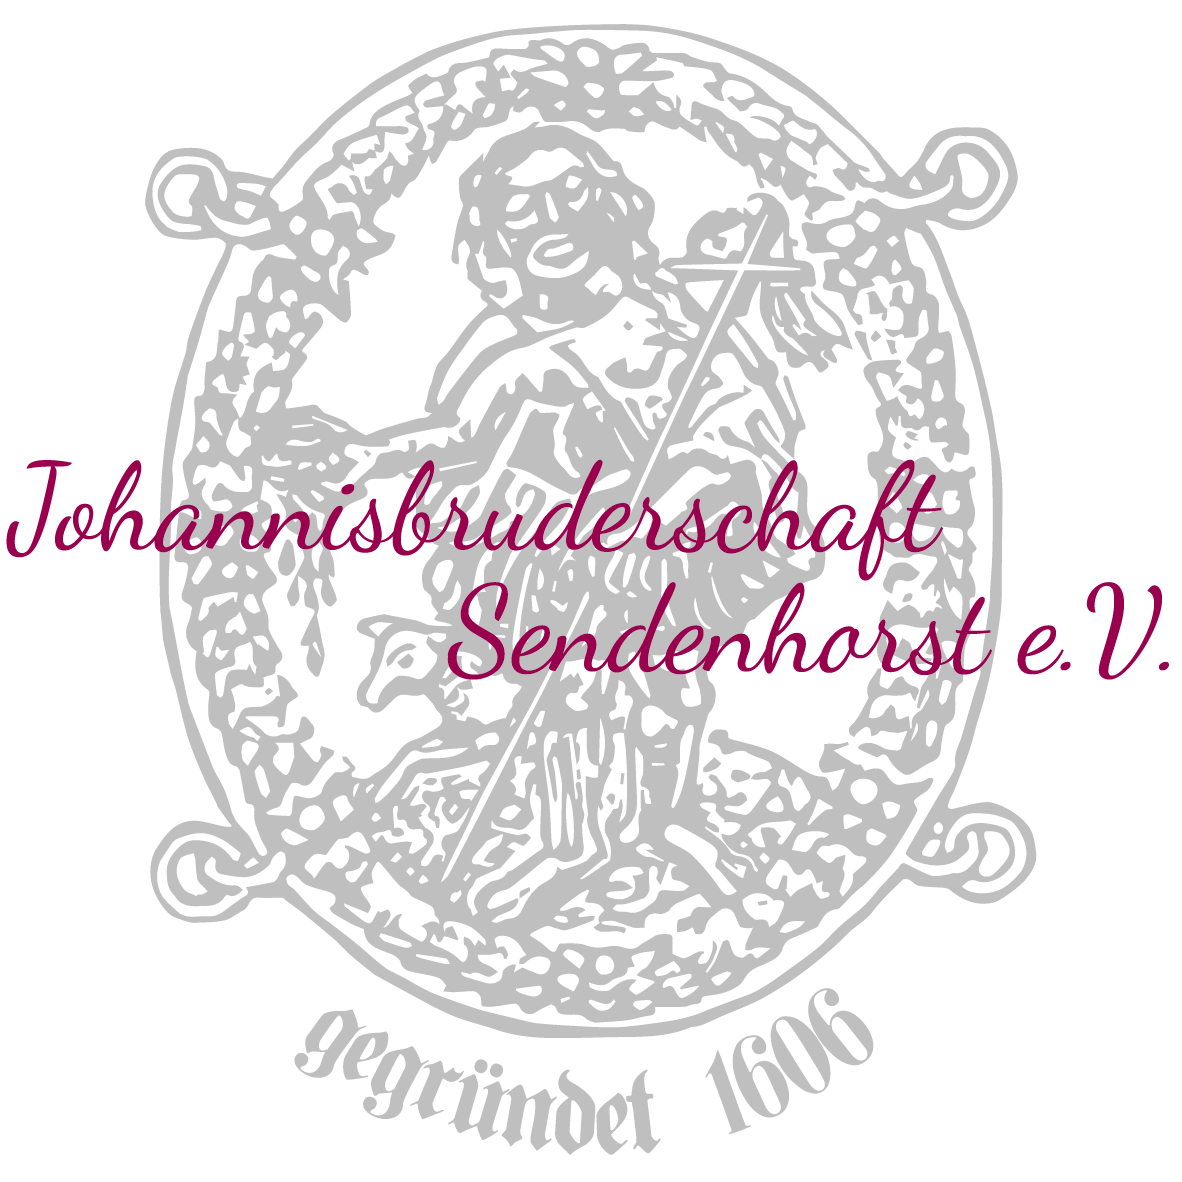 Johannesbruderschaft Sendenhorst logo